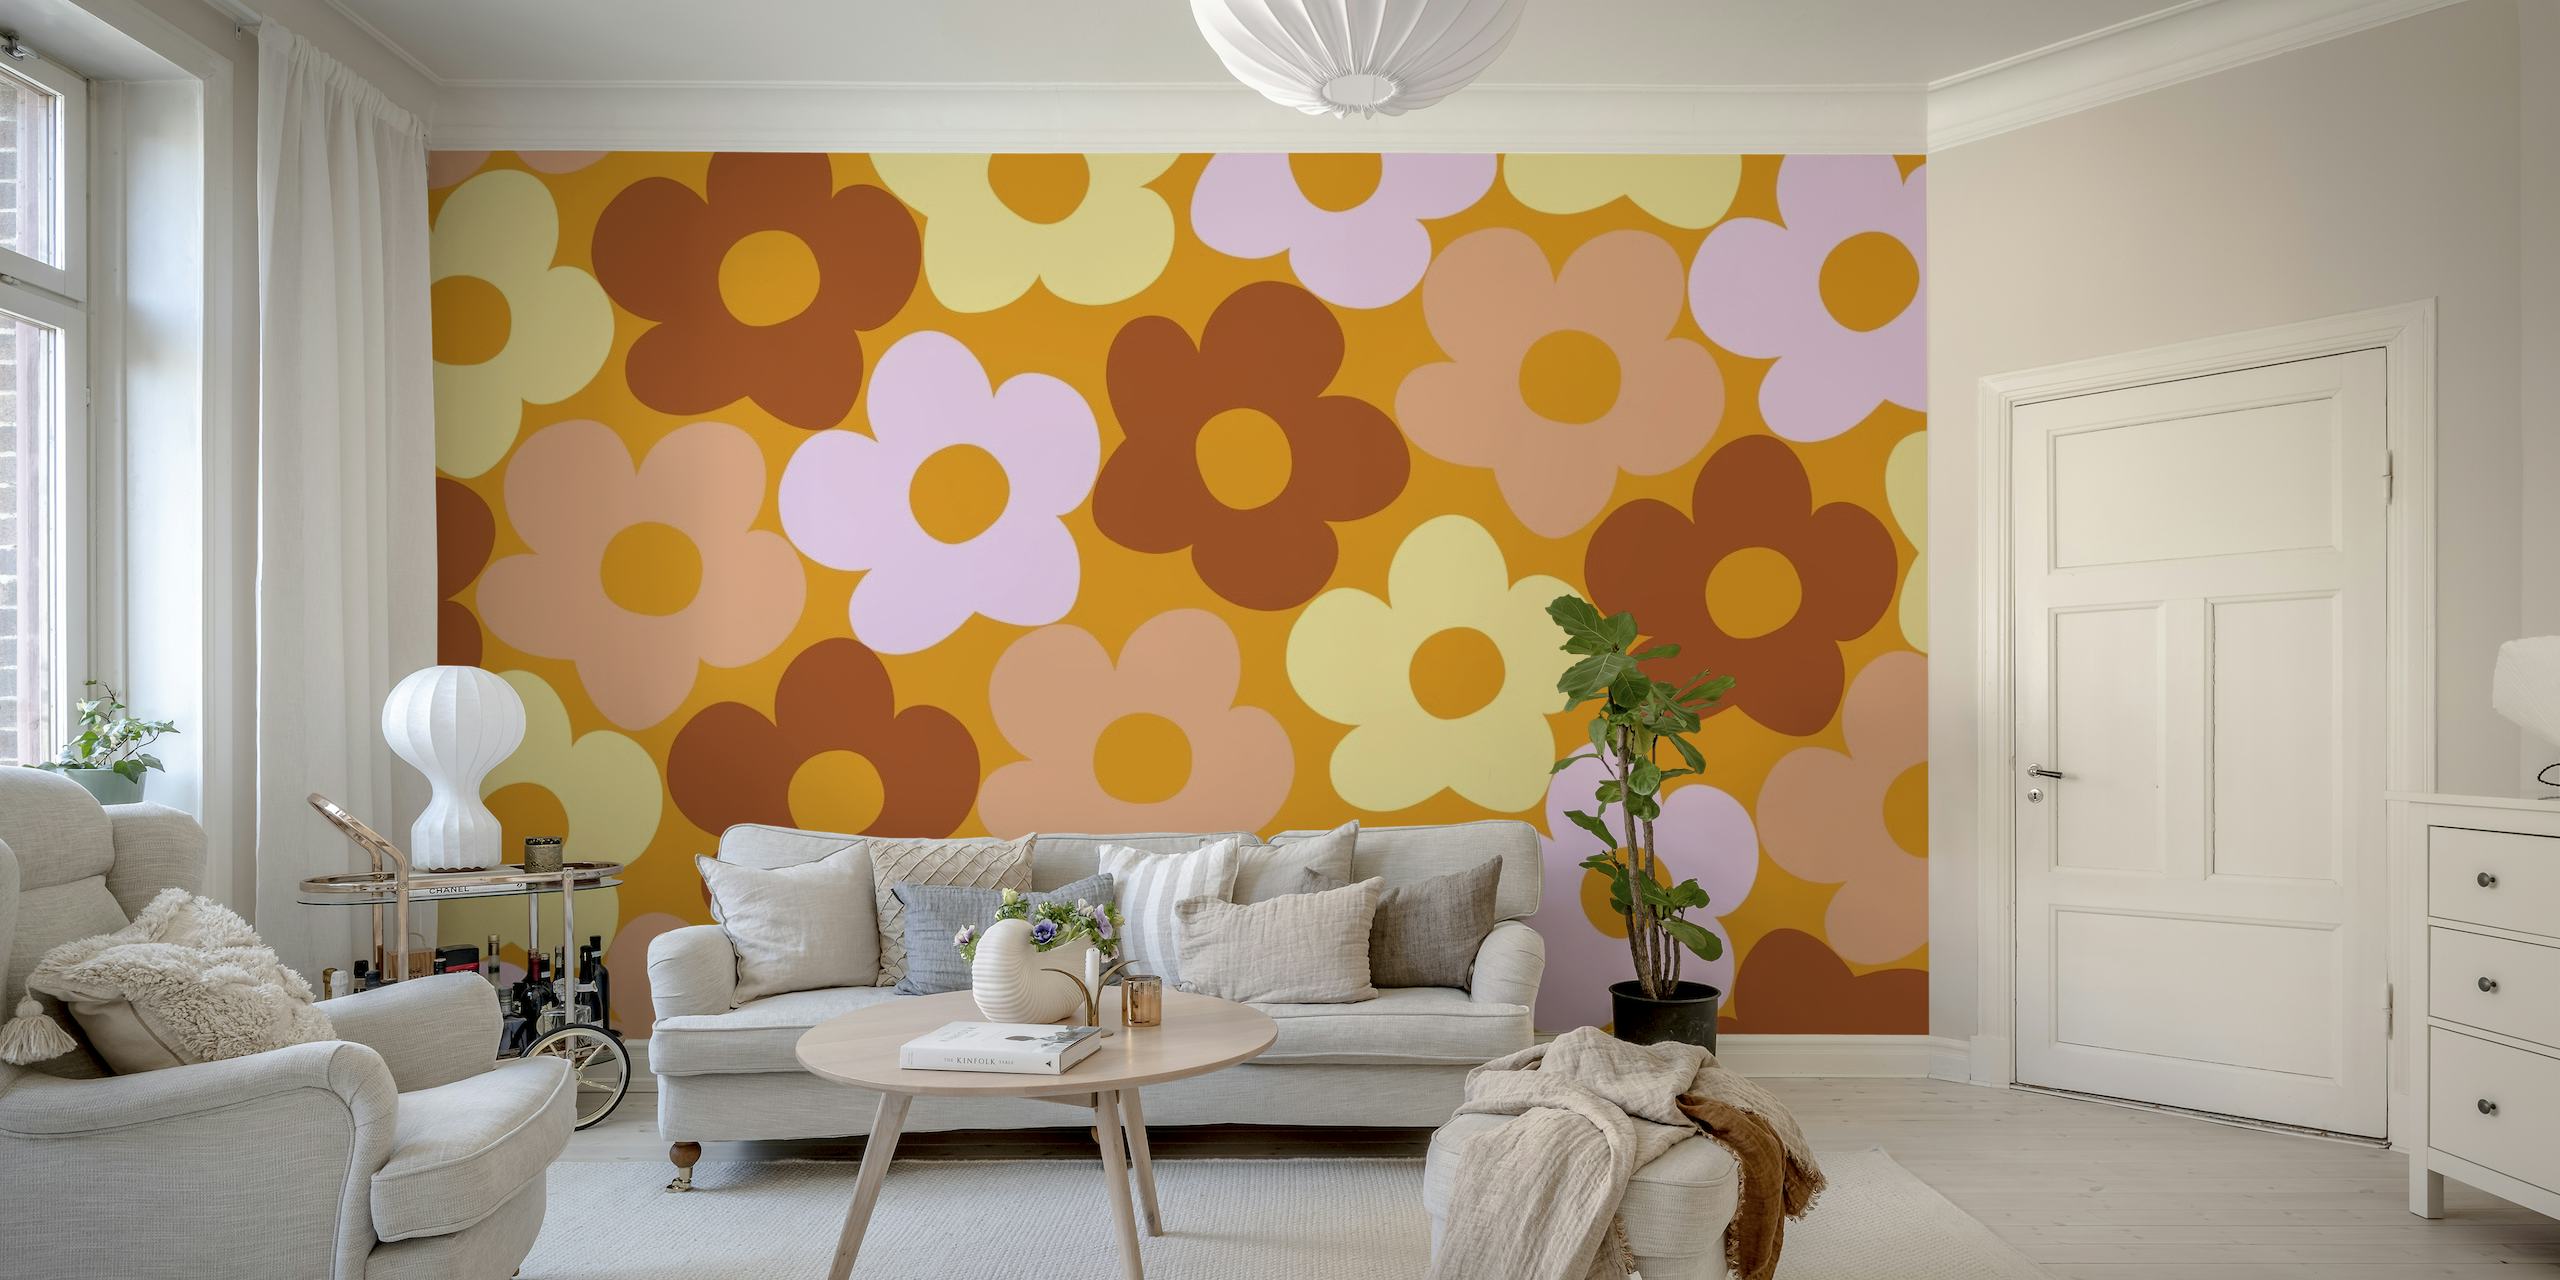 Retro inspiriran zidni mural s uzorkom jesenjih tratinčica u toplim nijansama na happywall.com